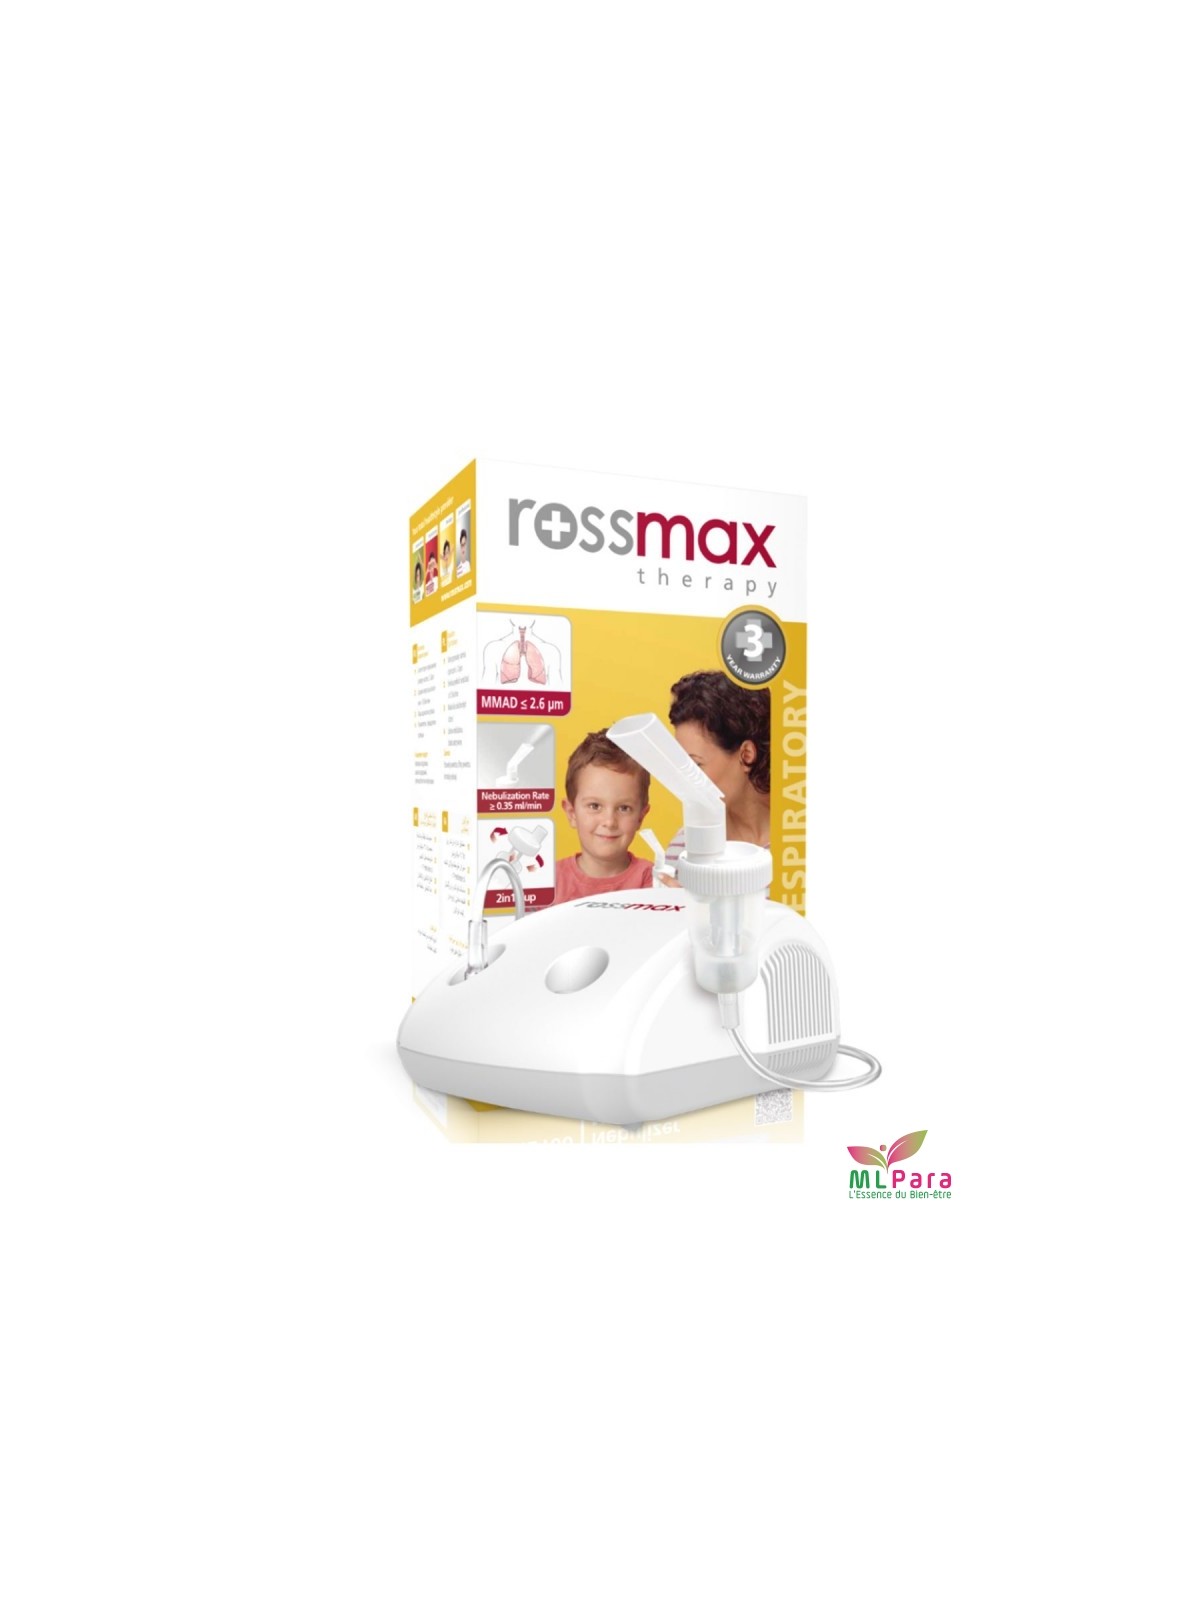 Rossmax Z1 est un tensiomètre automatique validé cliniquement